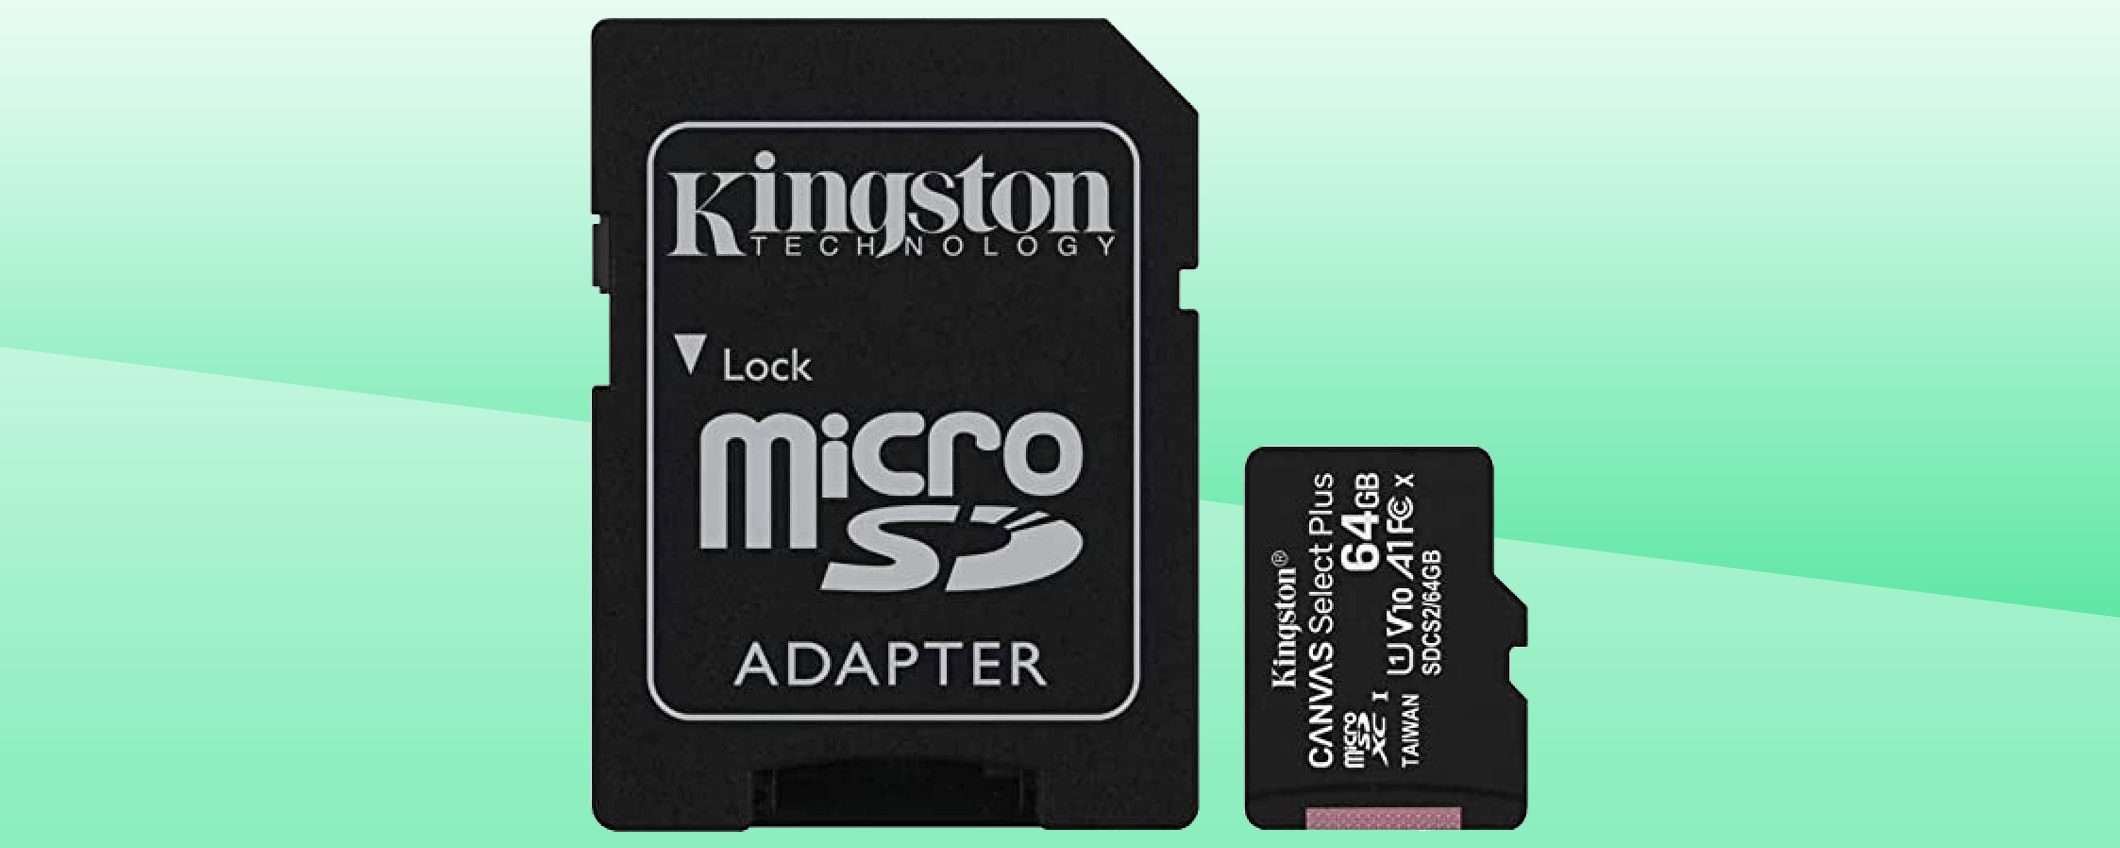 MicroSD 64 GB: solo 5,99€, arriva domani